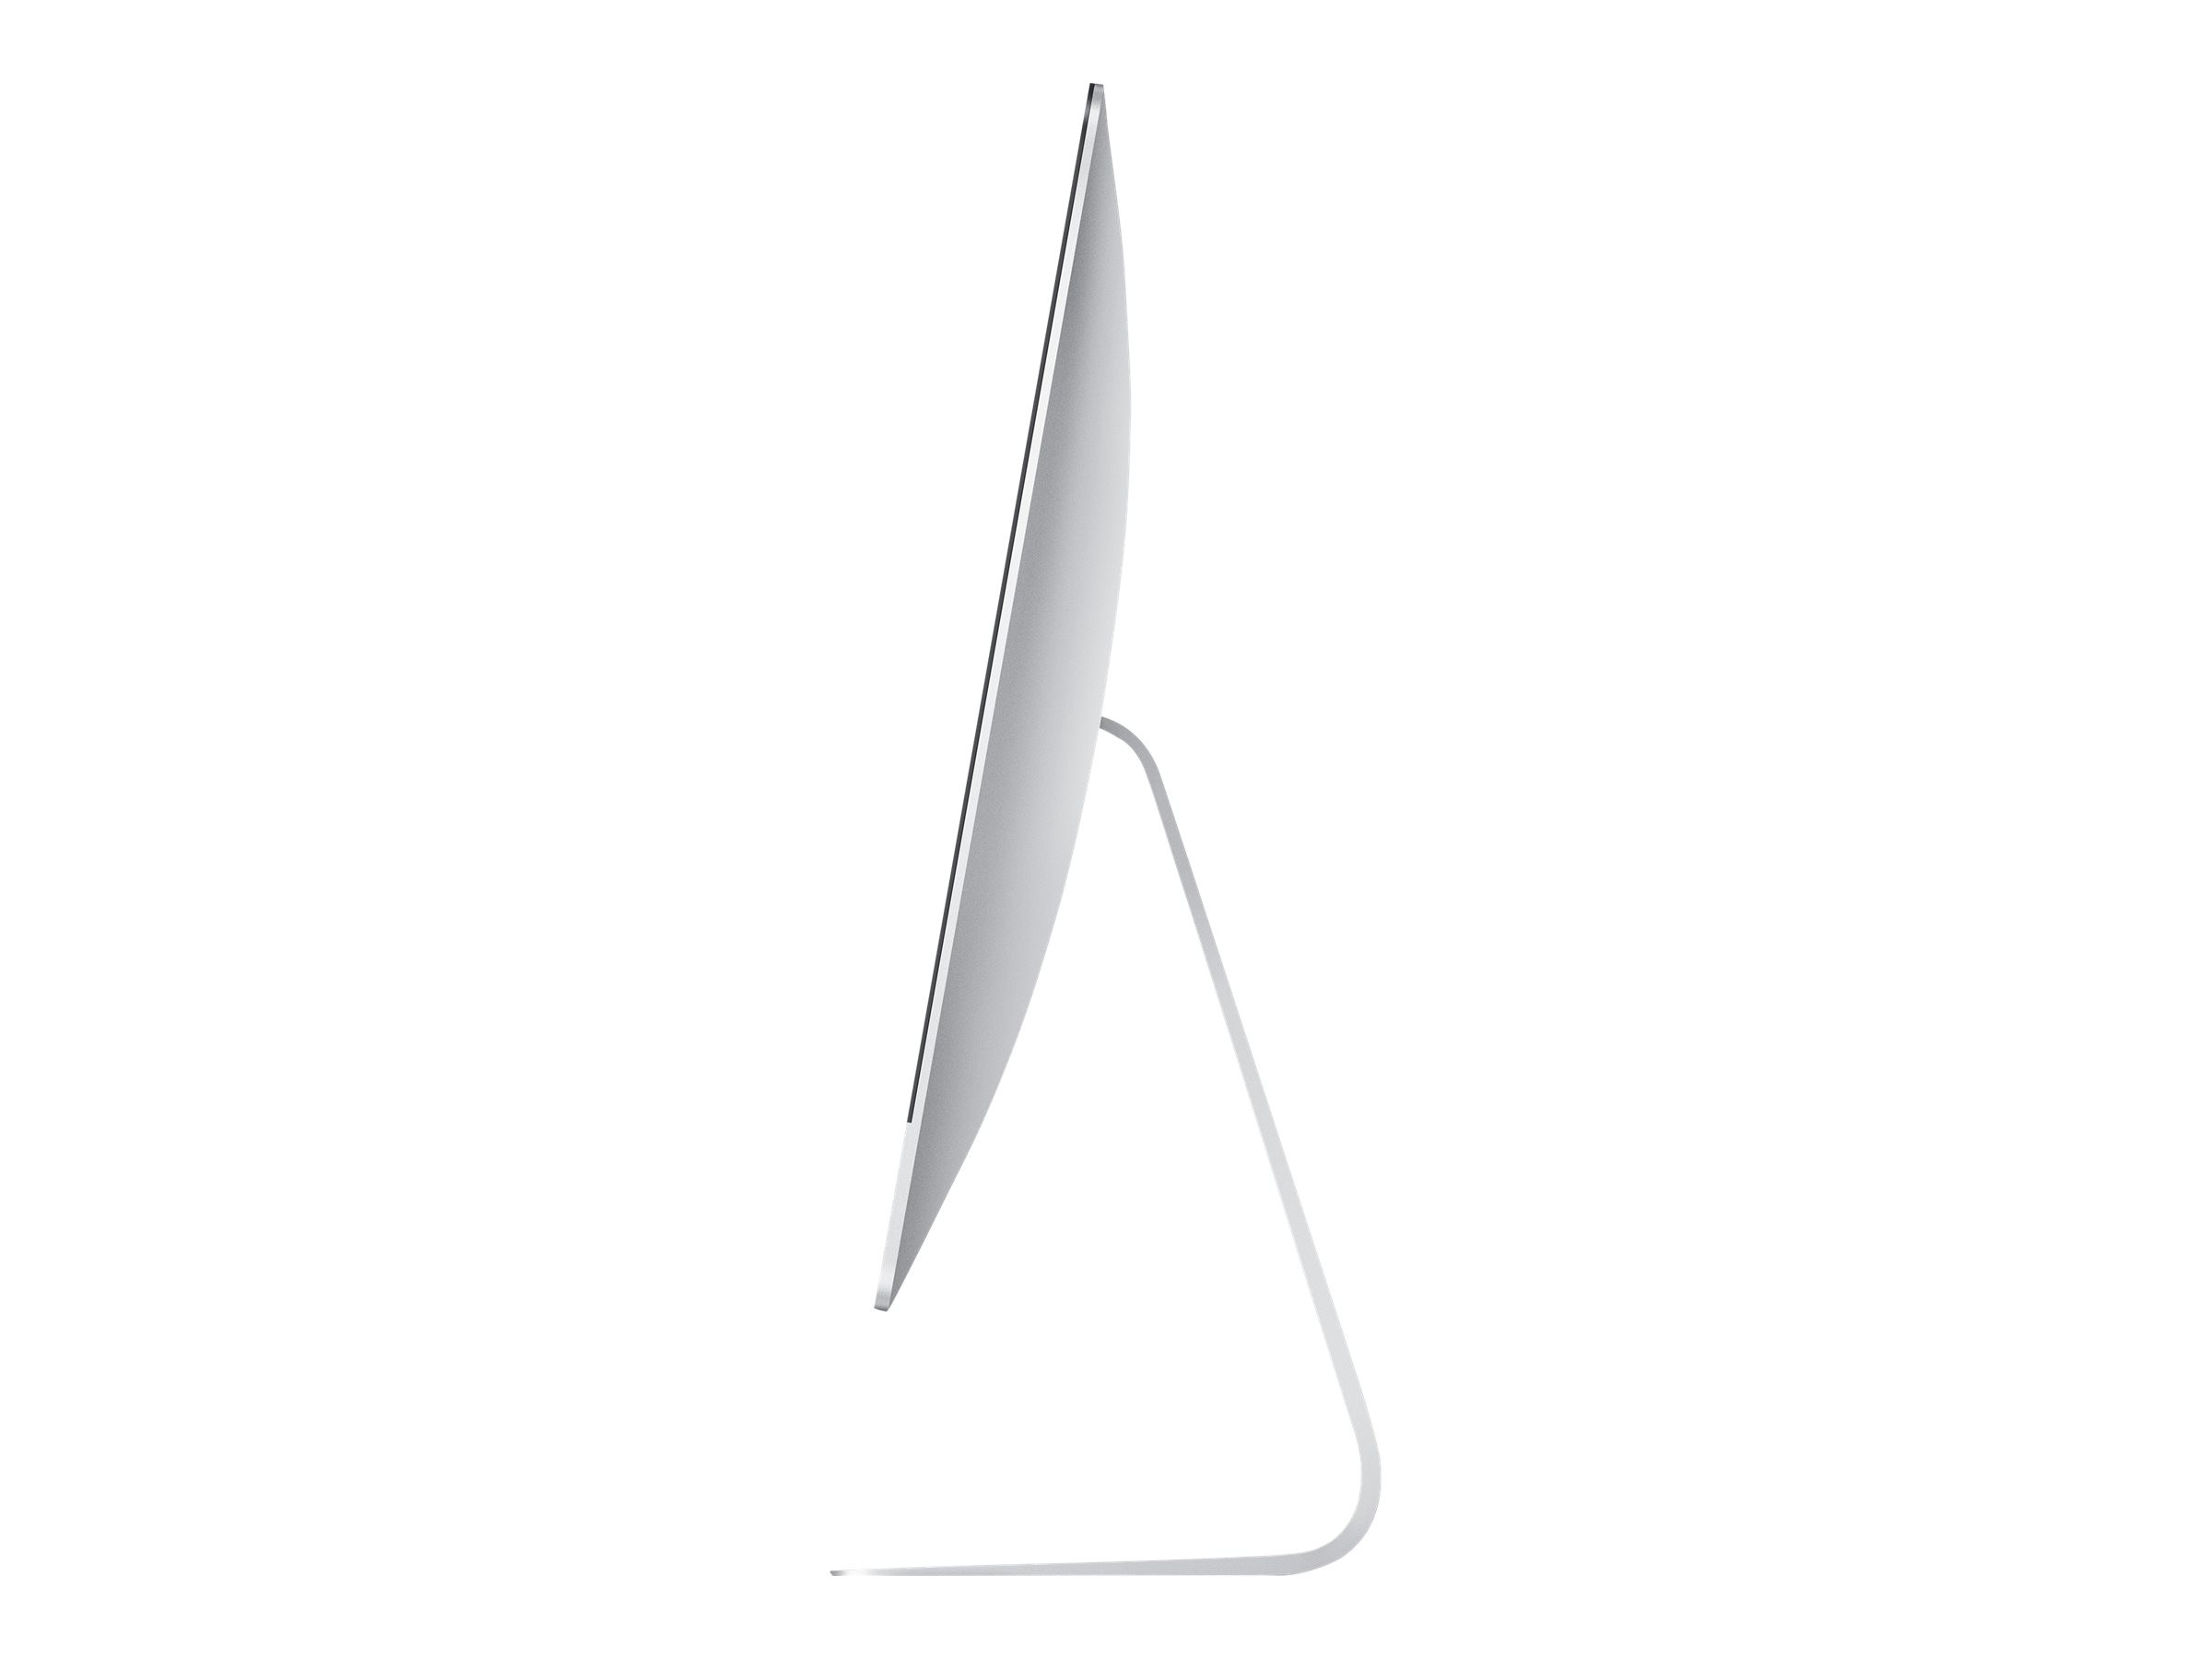 Apple iMac 17.1 Ende 2015 | 27" | 5K Retina | i7-6700K | 16GB | 1TB HDD | M390 2GB | MacOS